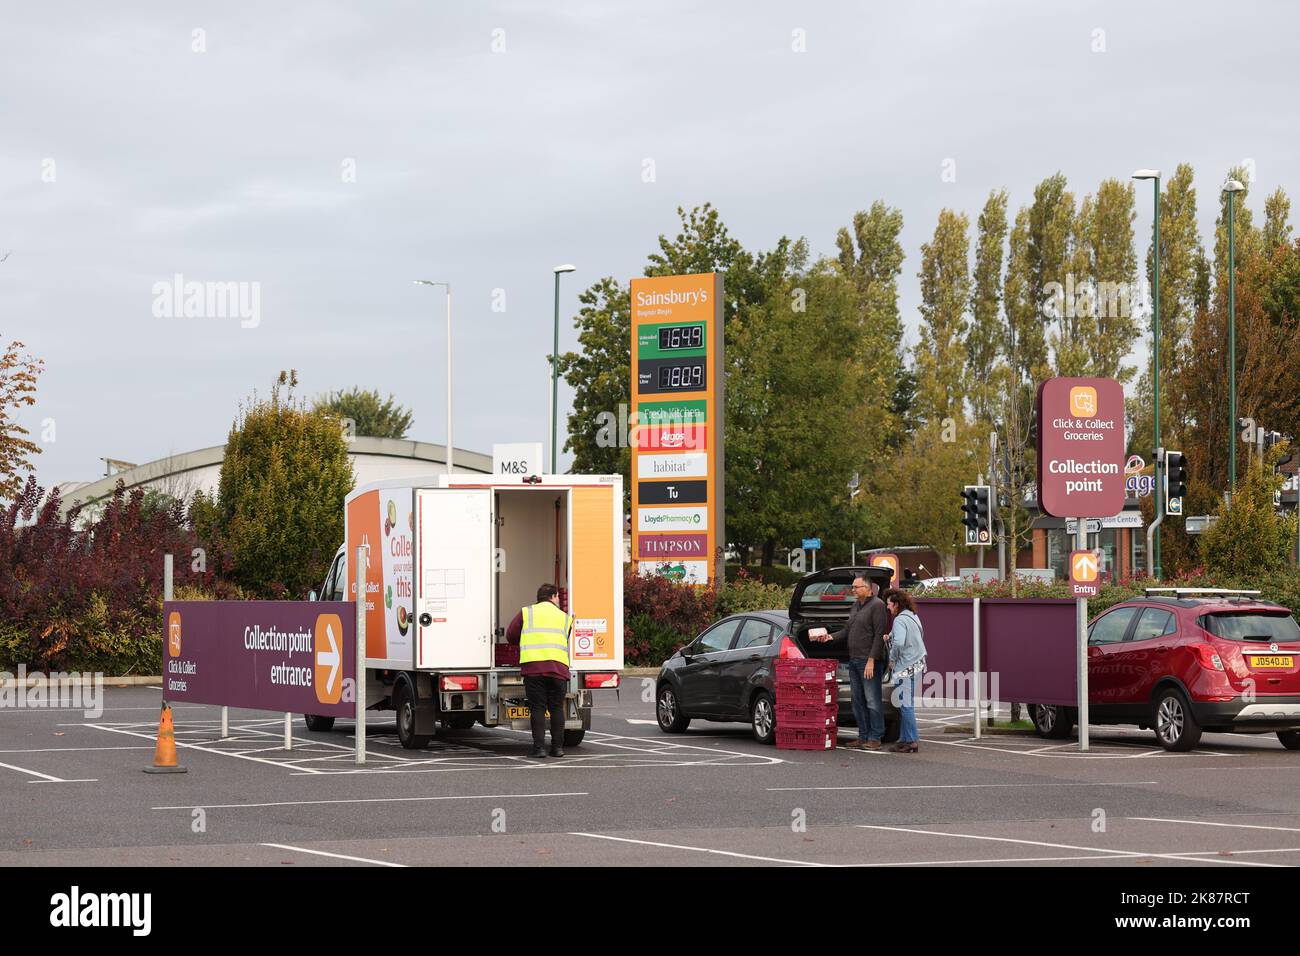 Clientes que utilizan un punto de recogida Sainsbury's Click & Collect en un aparcamiento en Bognor Regis, West Sussex Foto de stock